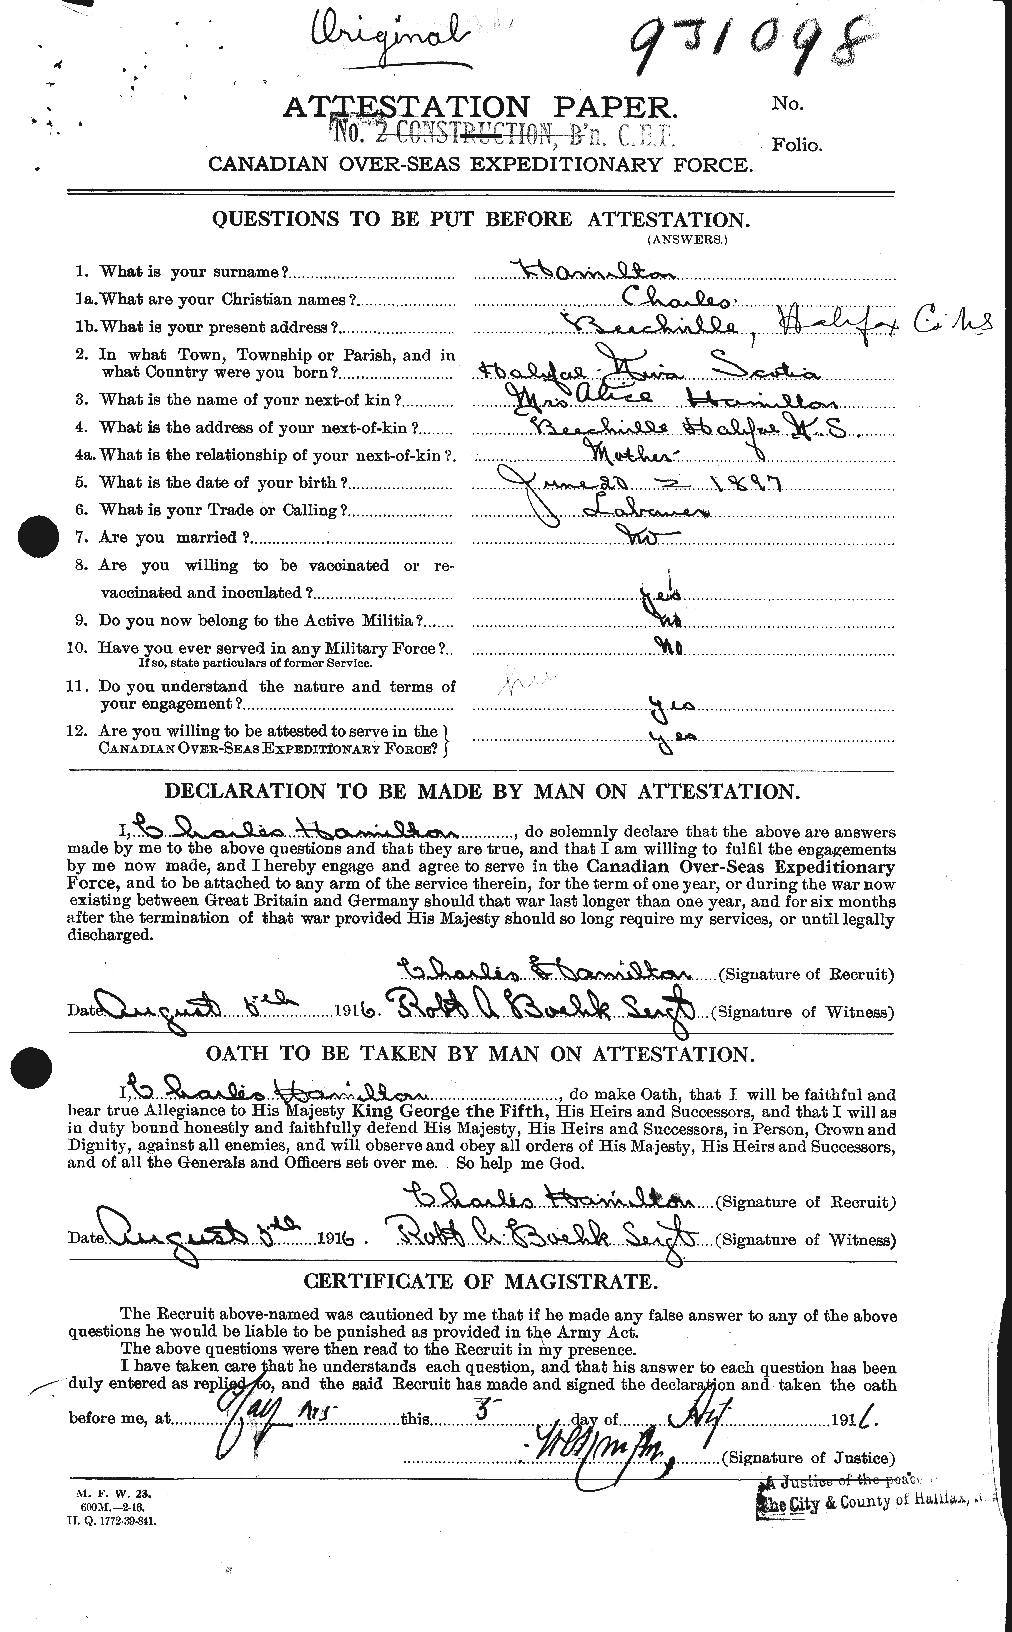 Dossiers du Personnel de la Première Guerre mondiale - CEC 375298a